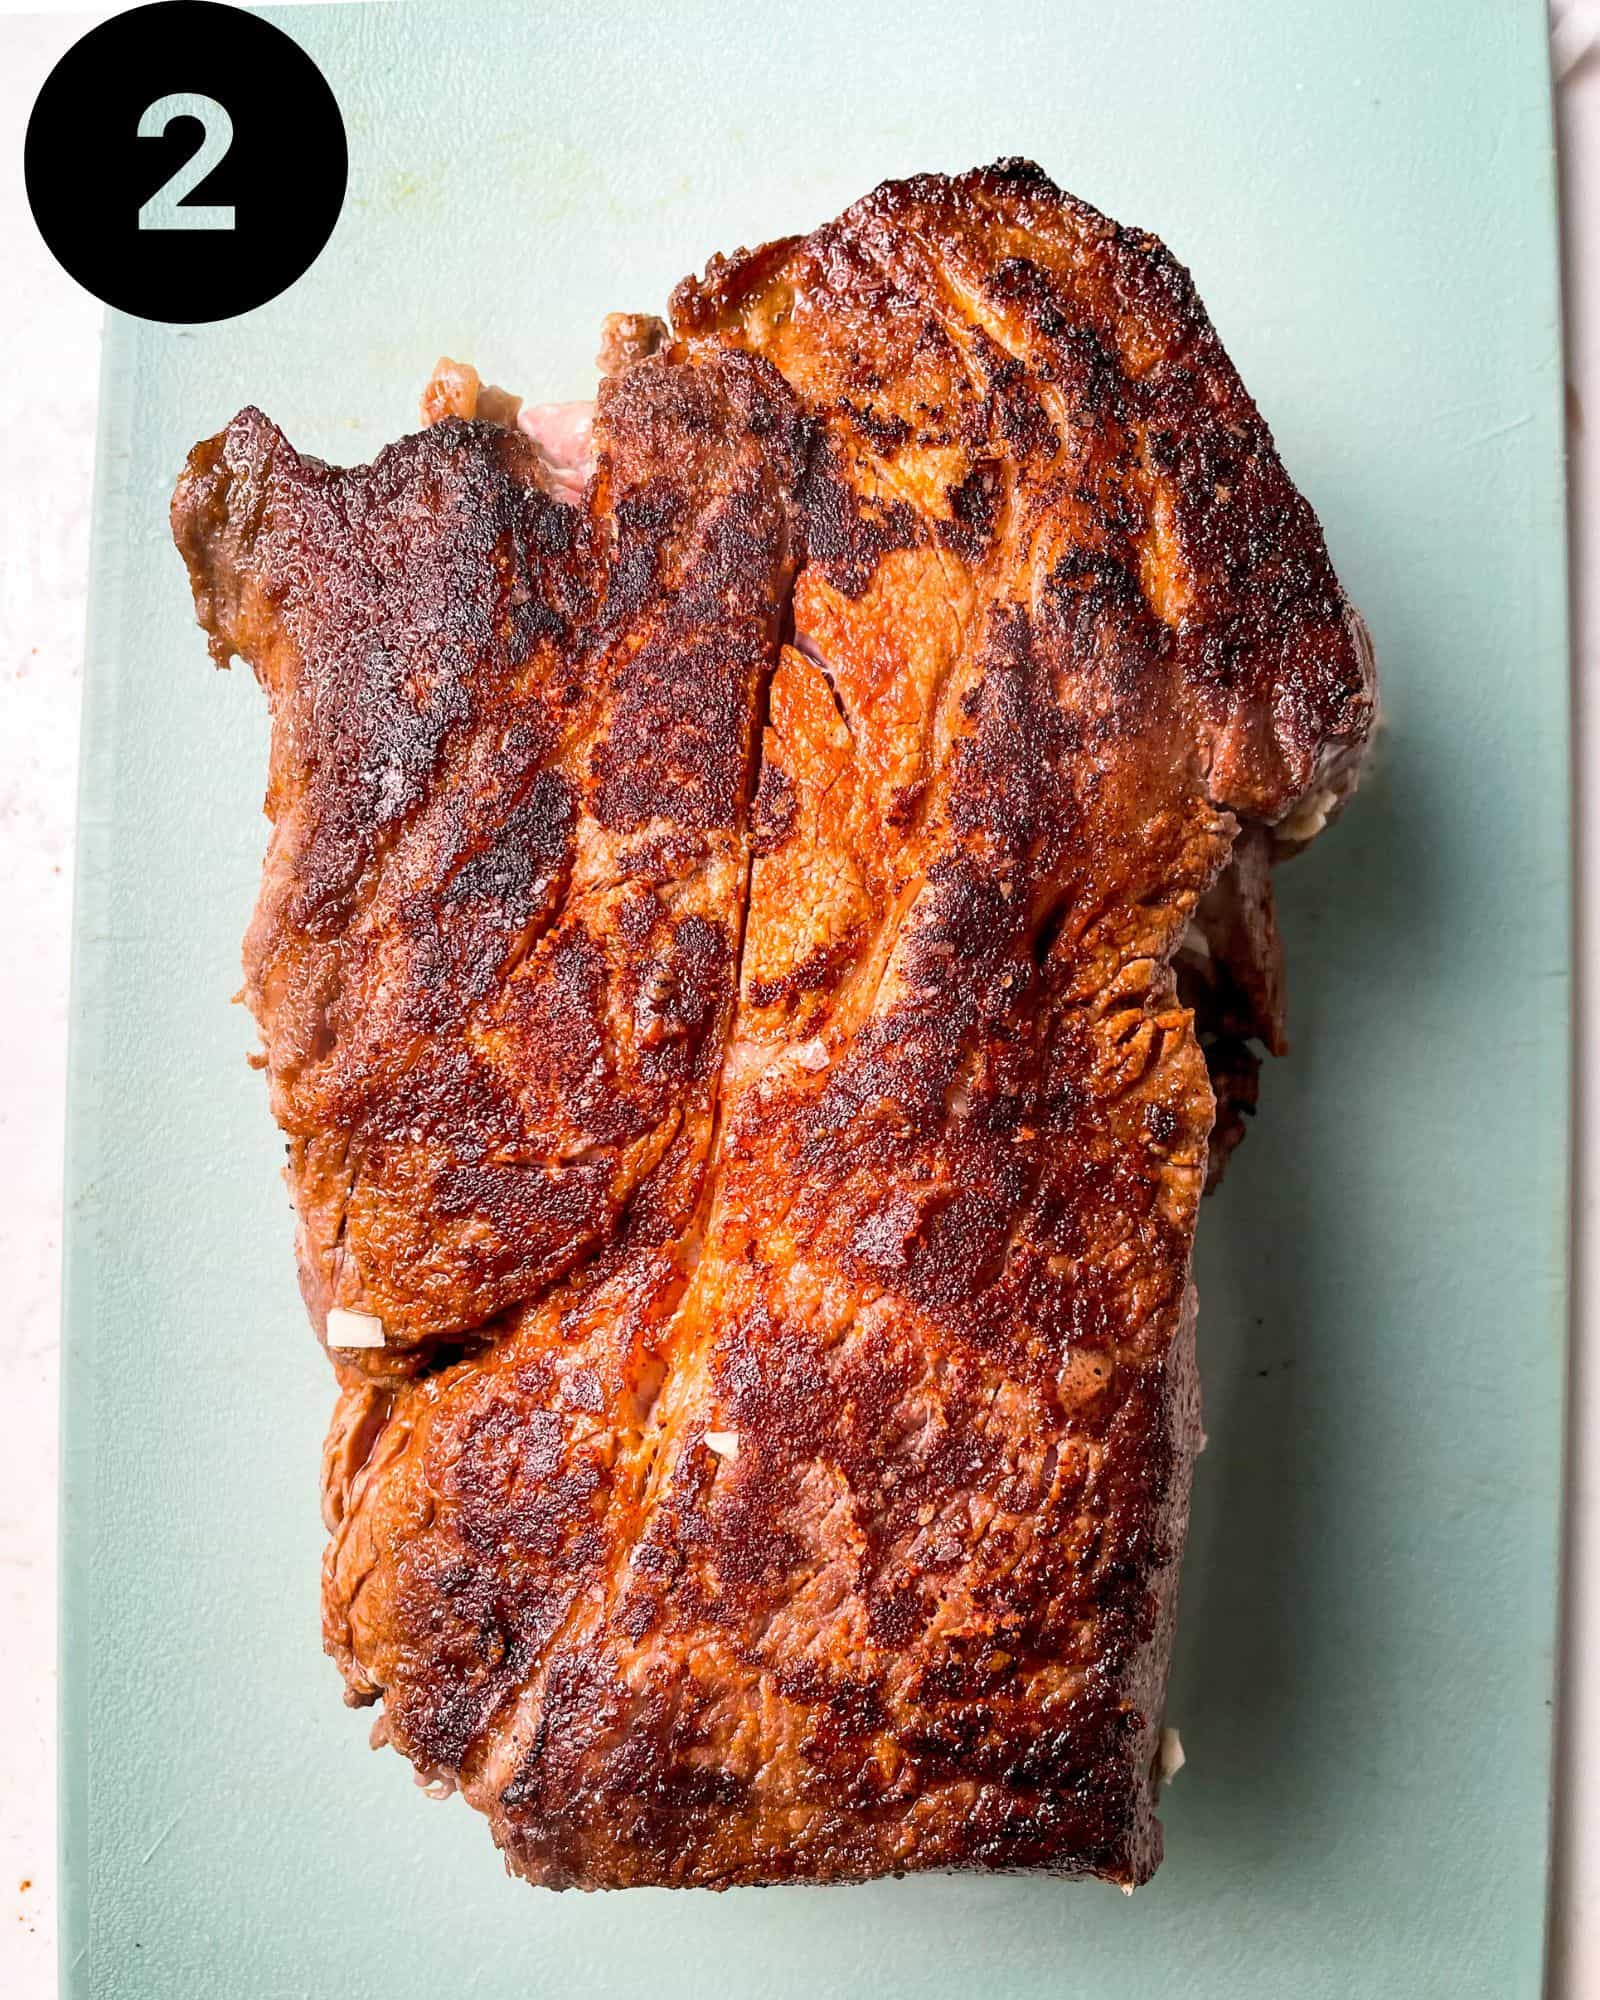 seared chuck roast on a cutting board.